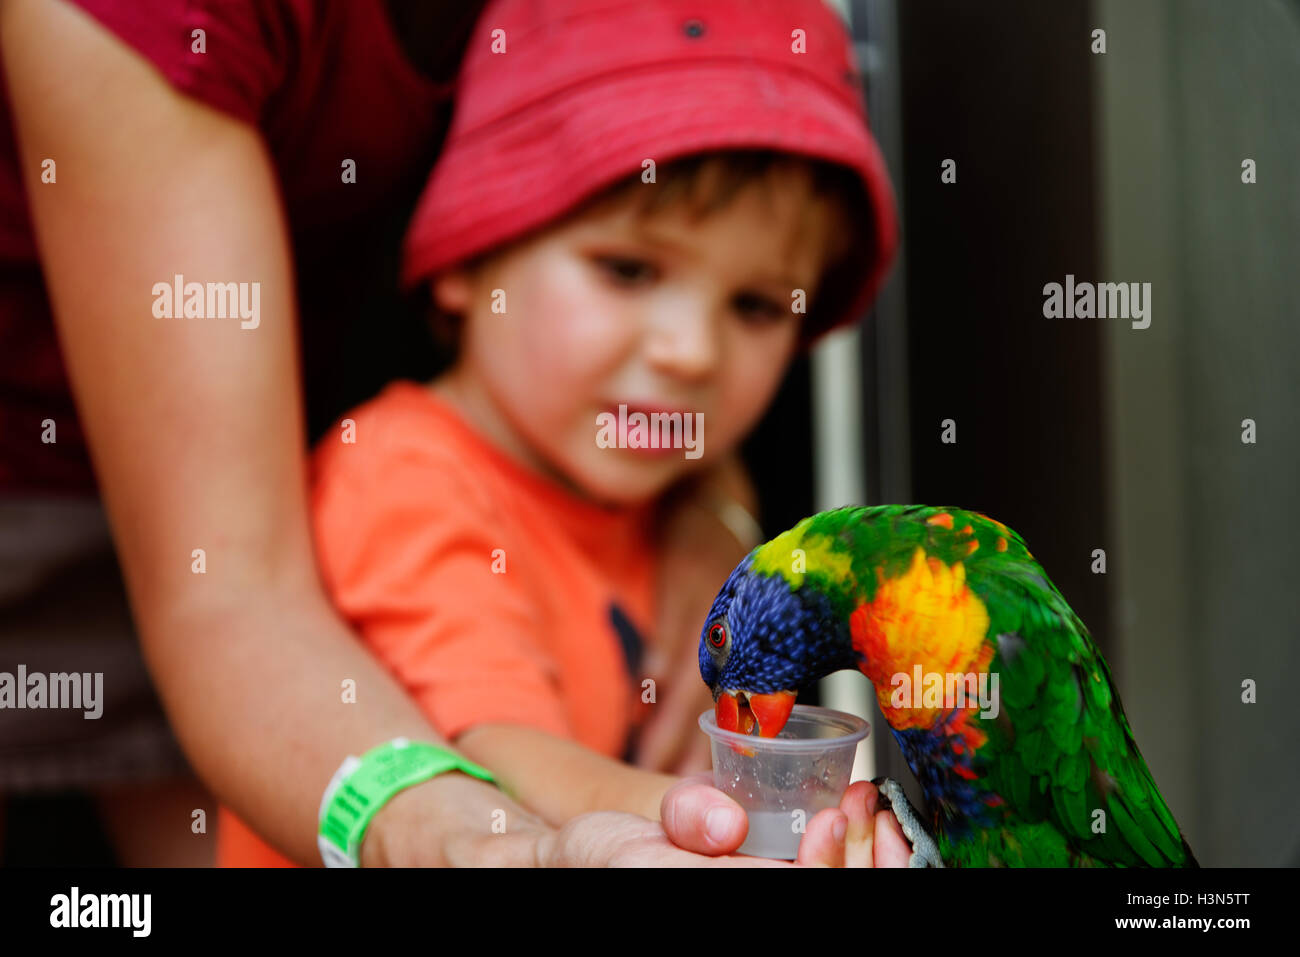 Un jeune garçon (4 ans) l'alimentation de la Rainbow loriquets verts au Zoo de Granby Québec Canada Banque D'Images